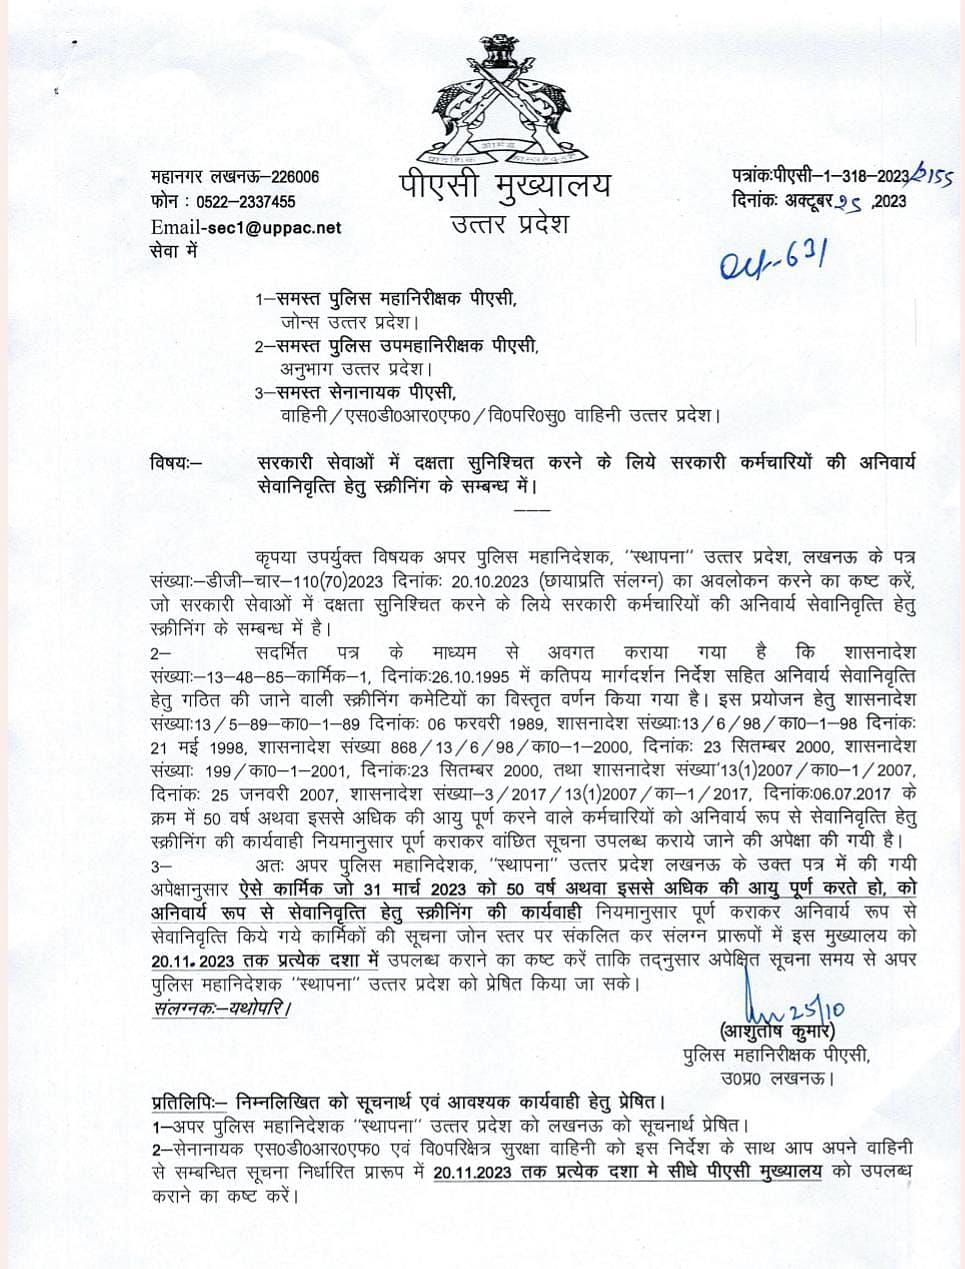 Uttar Pradesh: 30 नवंबर तक पुलिसकर्मियों की लिस्ट हेडक्वार्टर भेजी जाएगी.